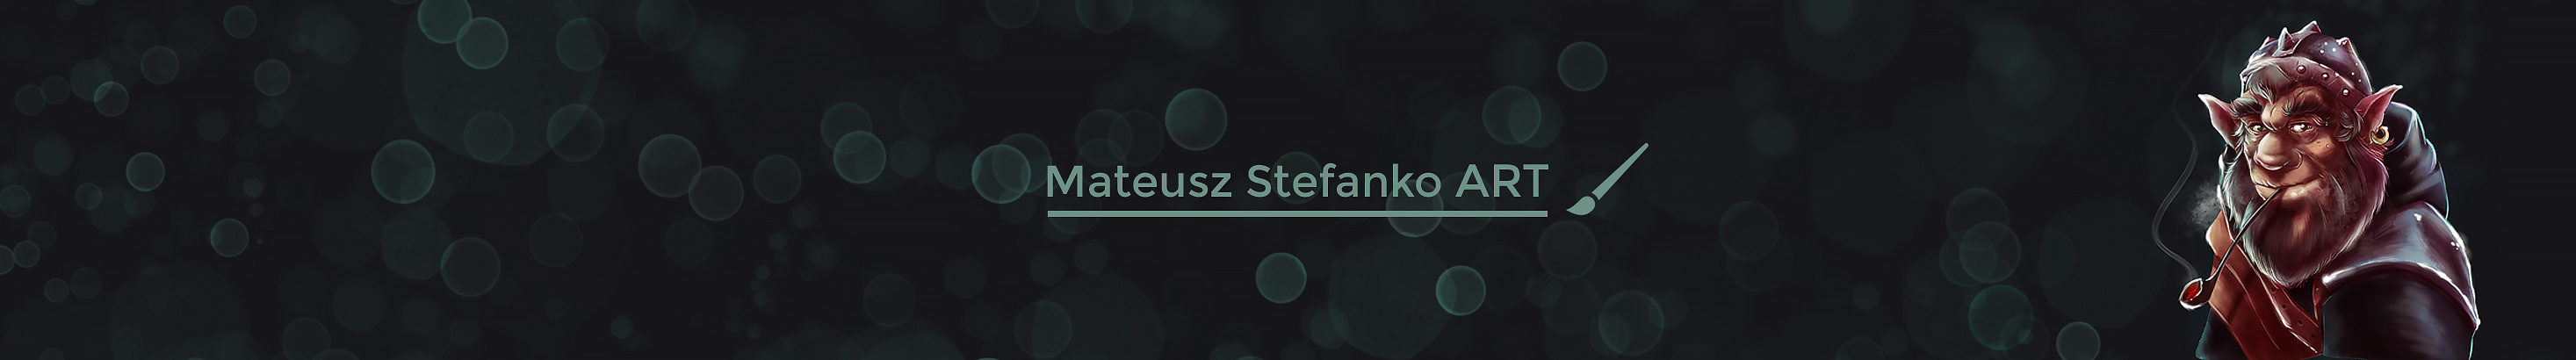 Mateusz Stefanko profil başlığı